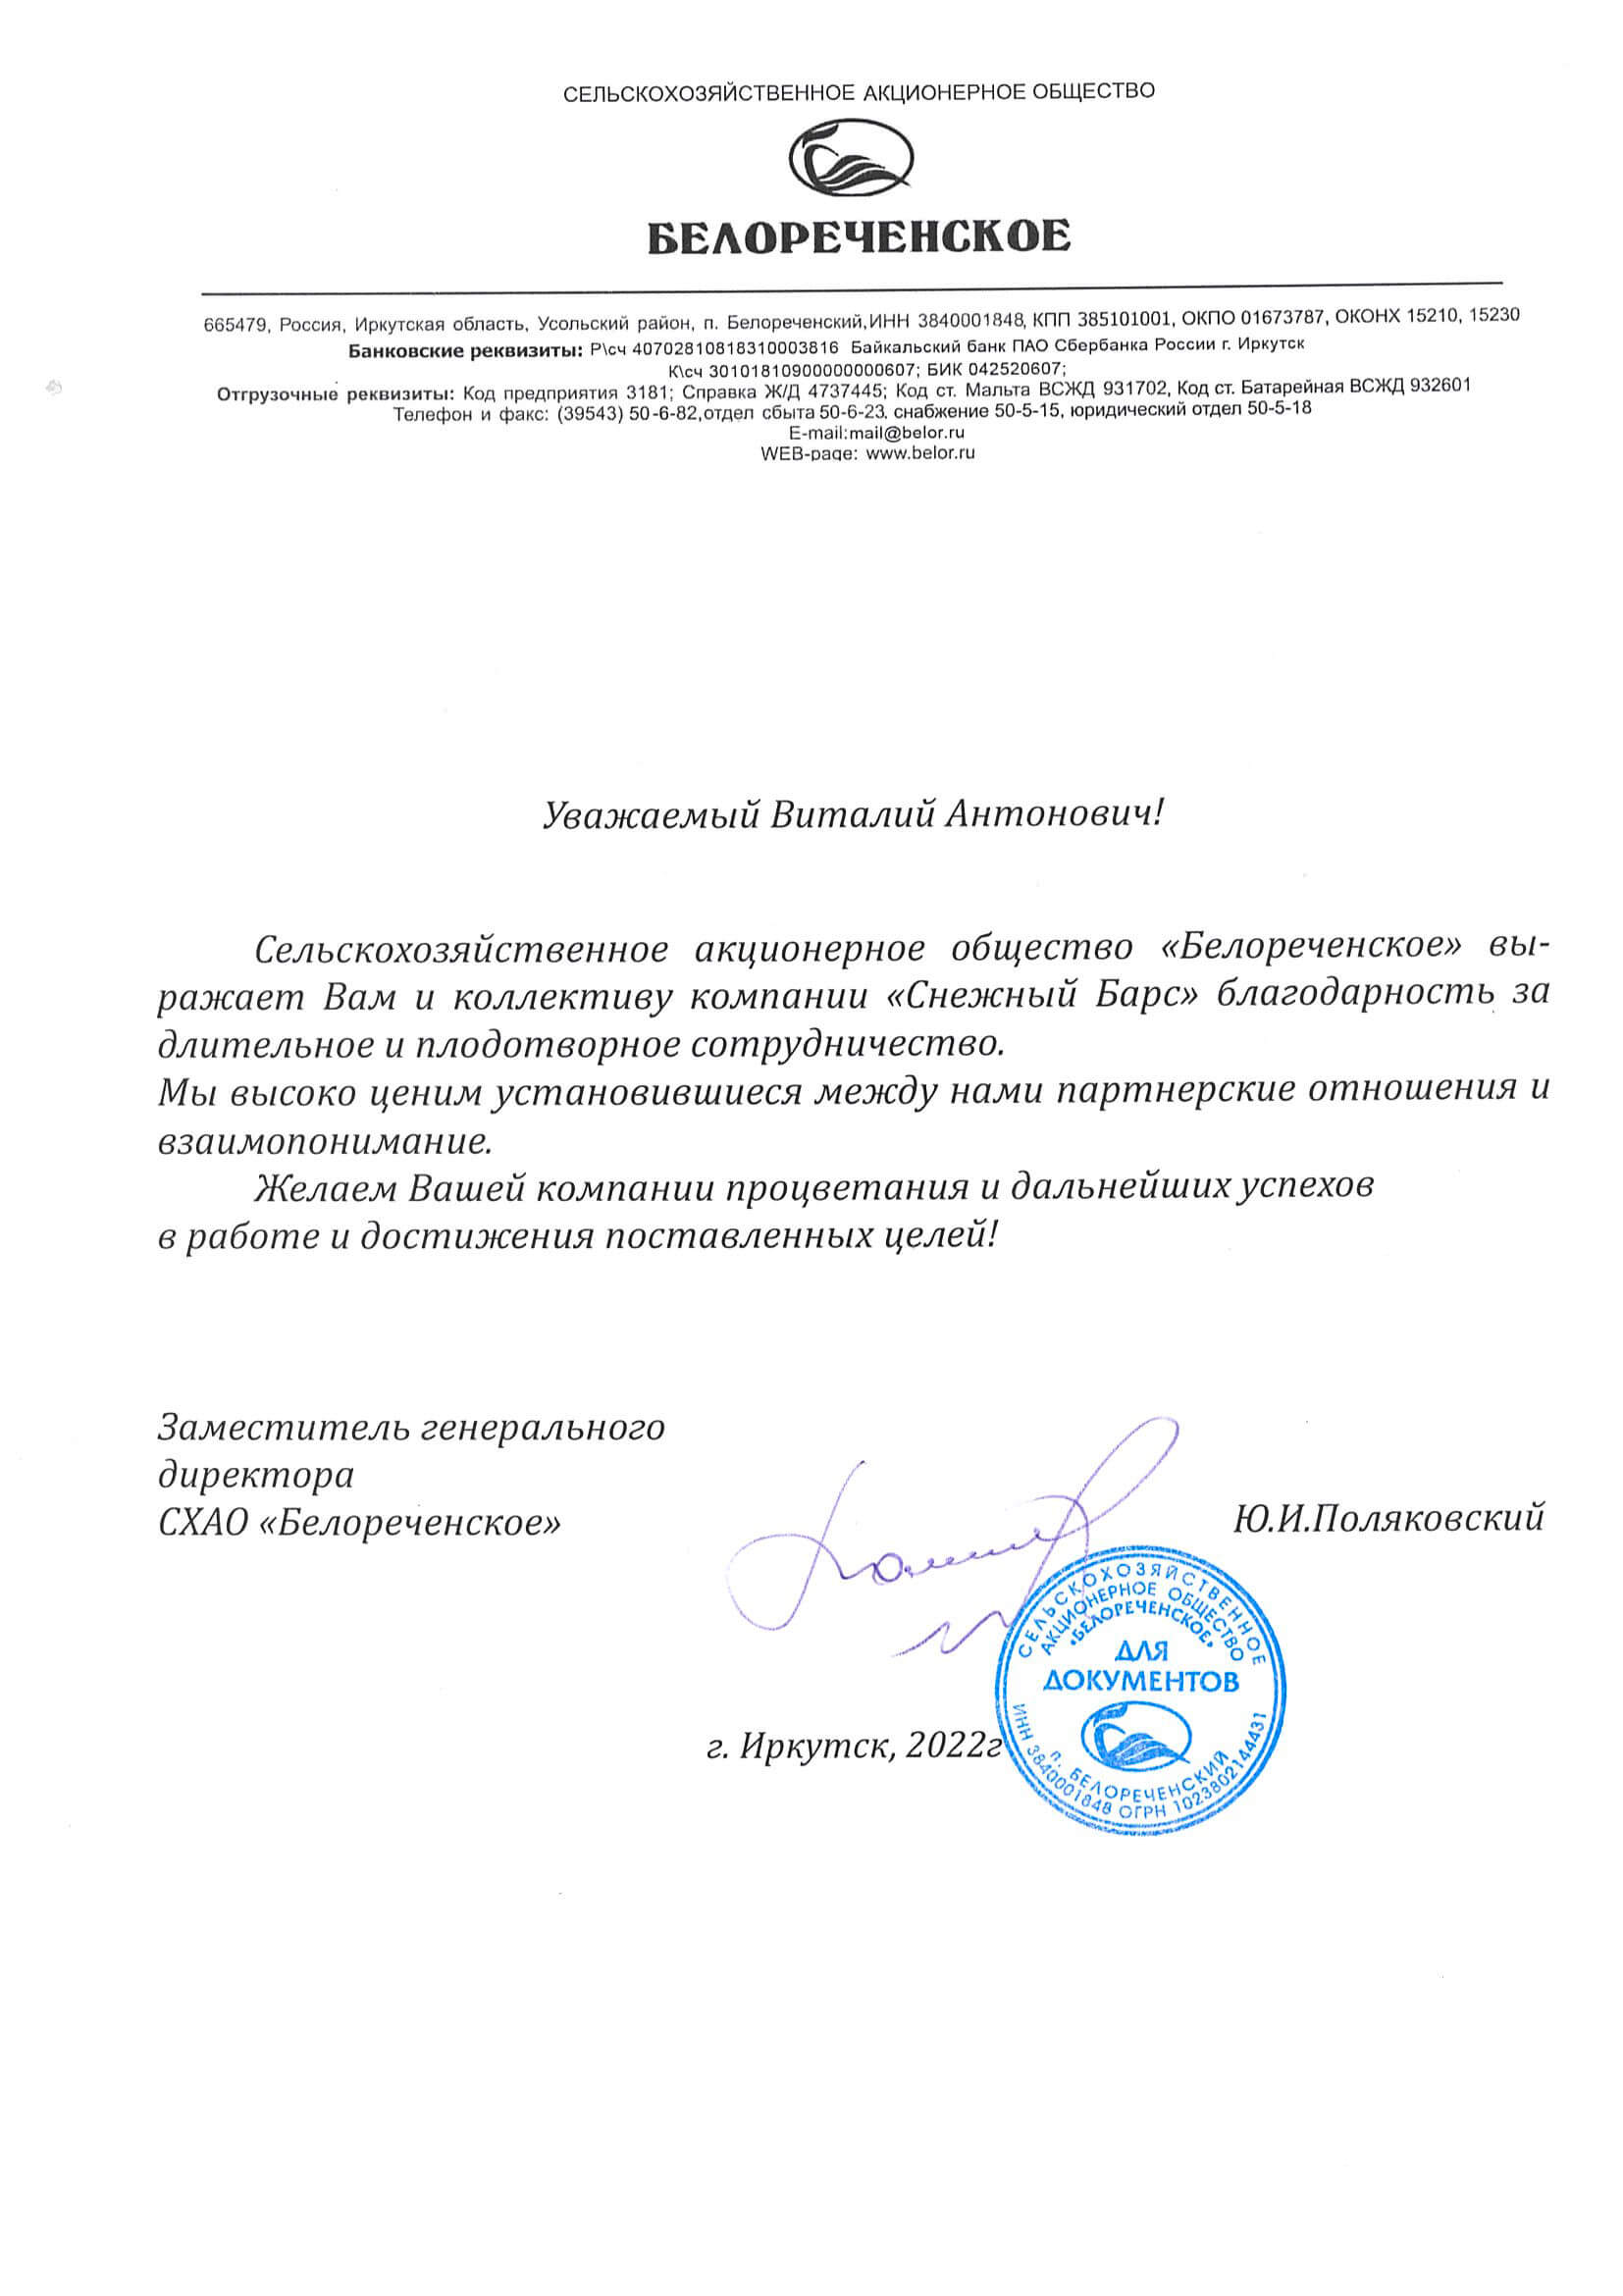 Благодарственное письмо от СХАО «Белореченское»